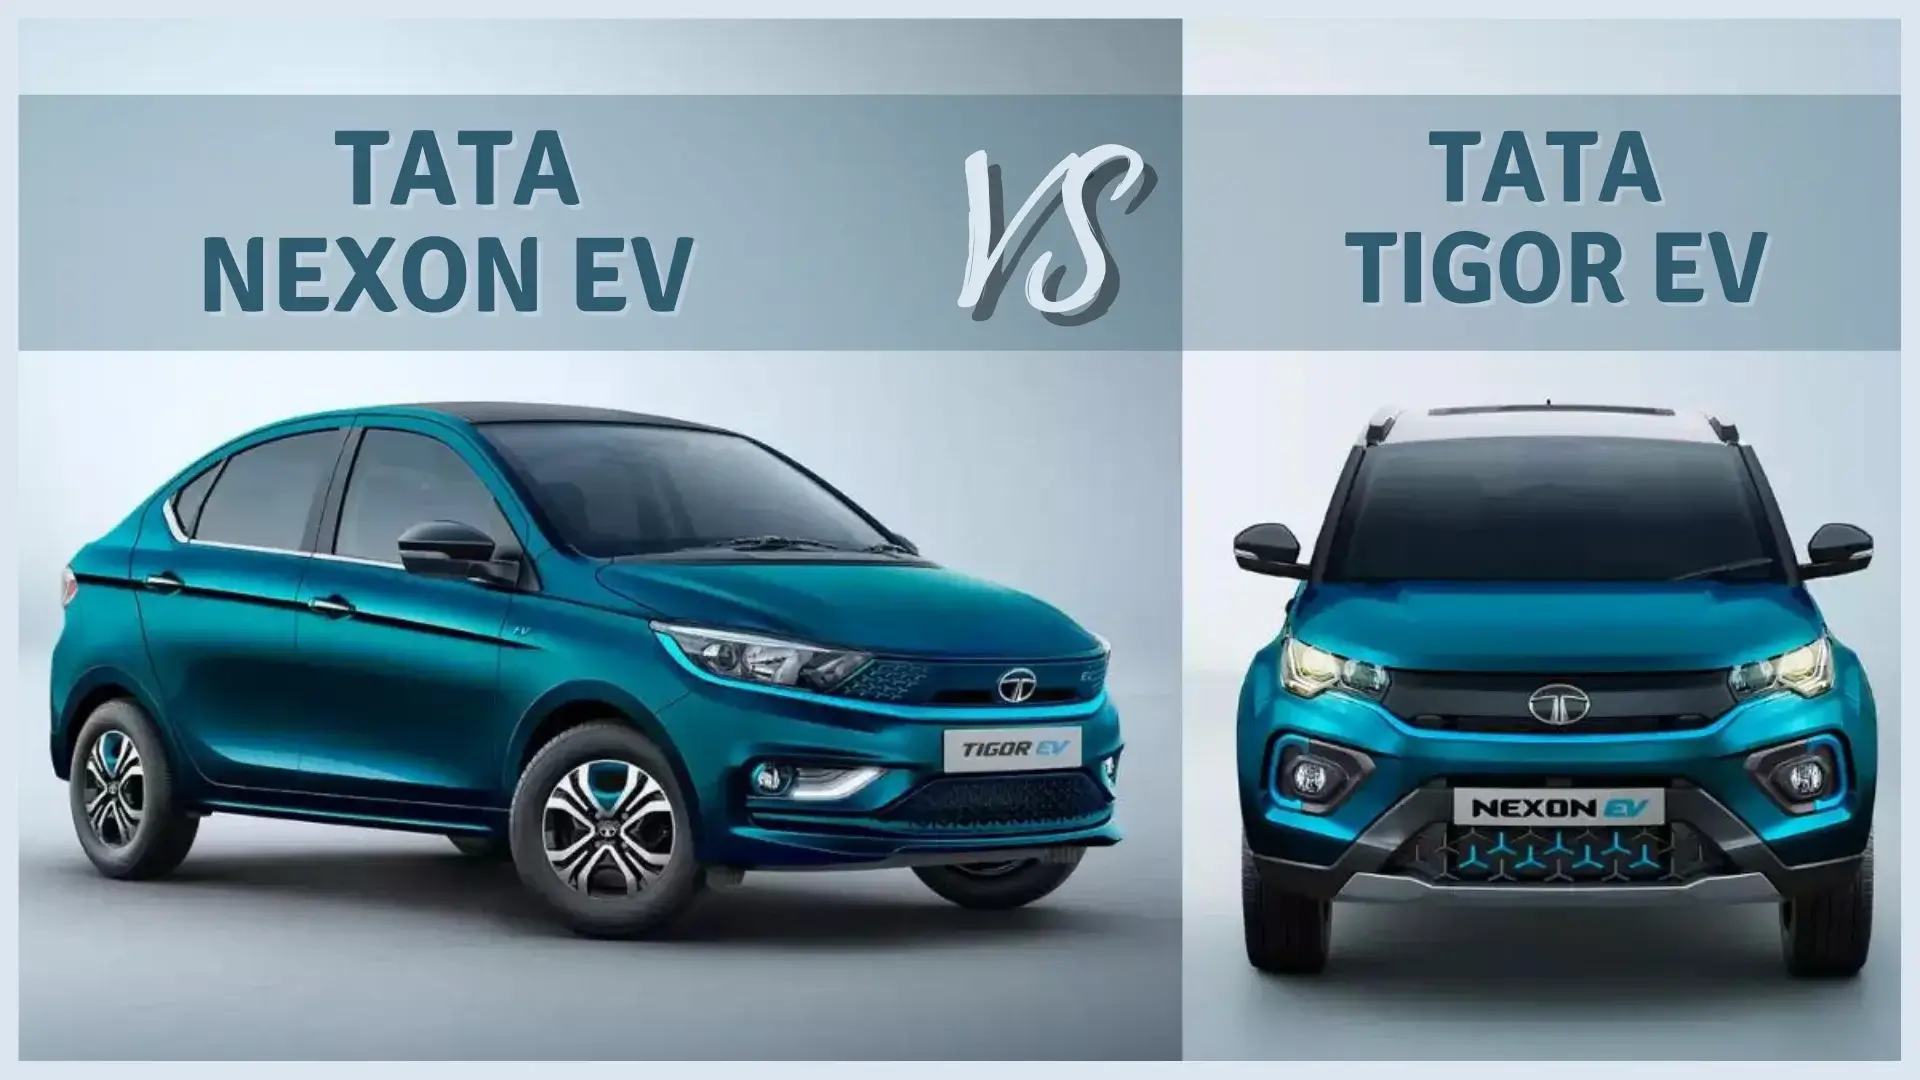 https://e-vehicleinfo.com/tata-nexon-ev-vs-tata-tigor-ev-best-electric-car-to-buy-in-india/